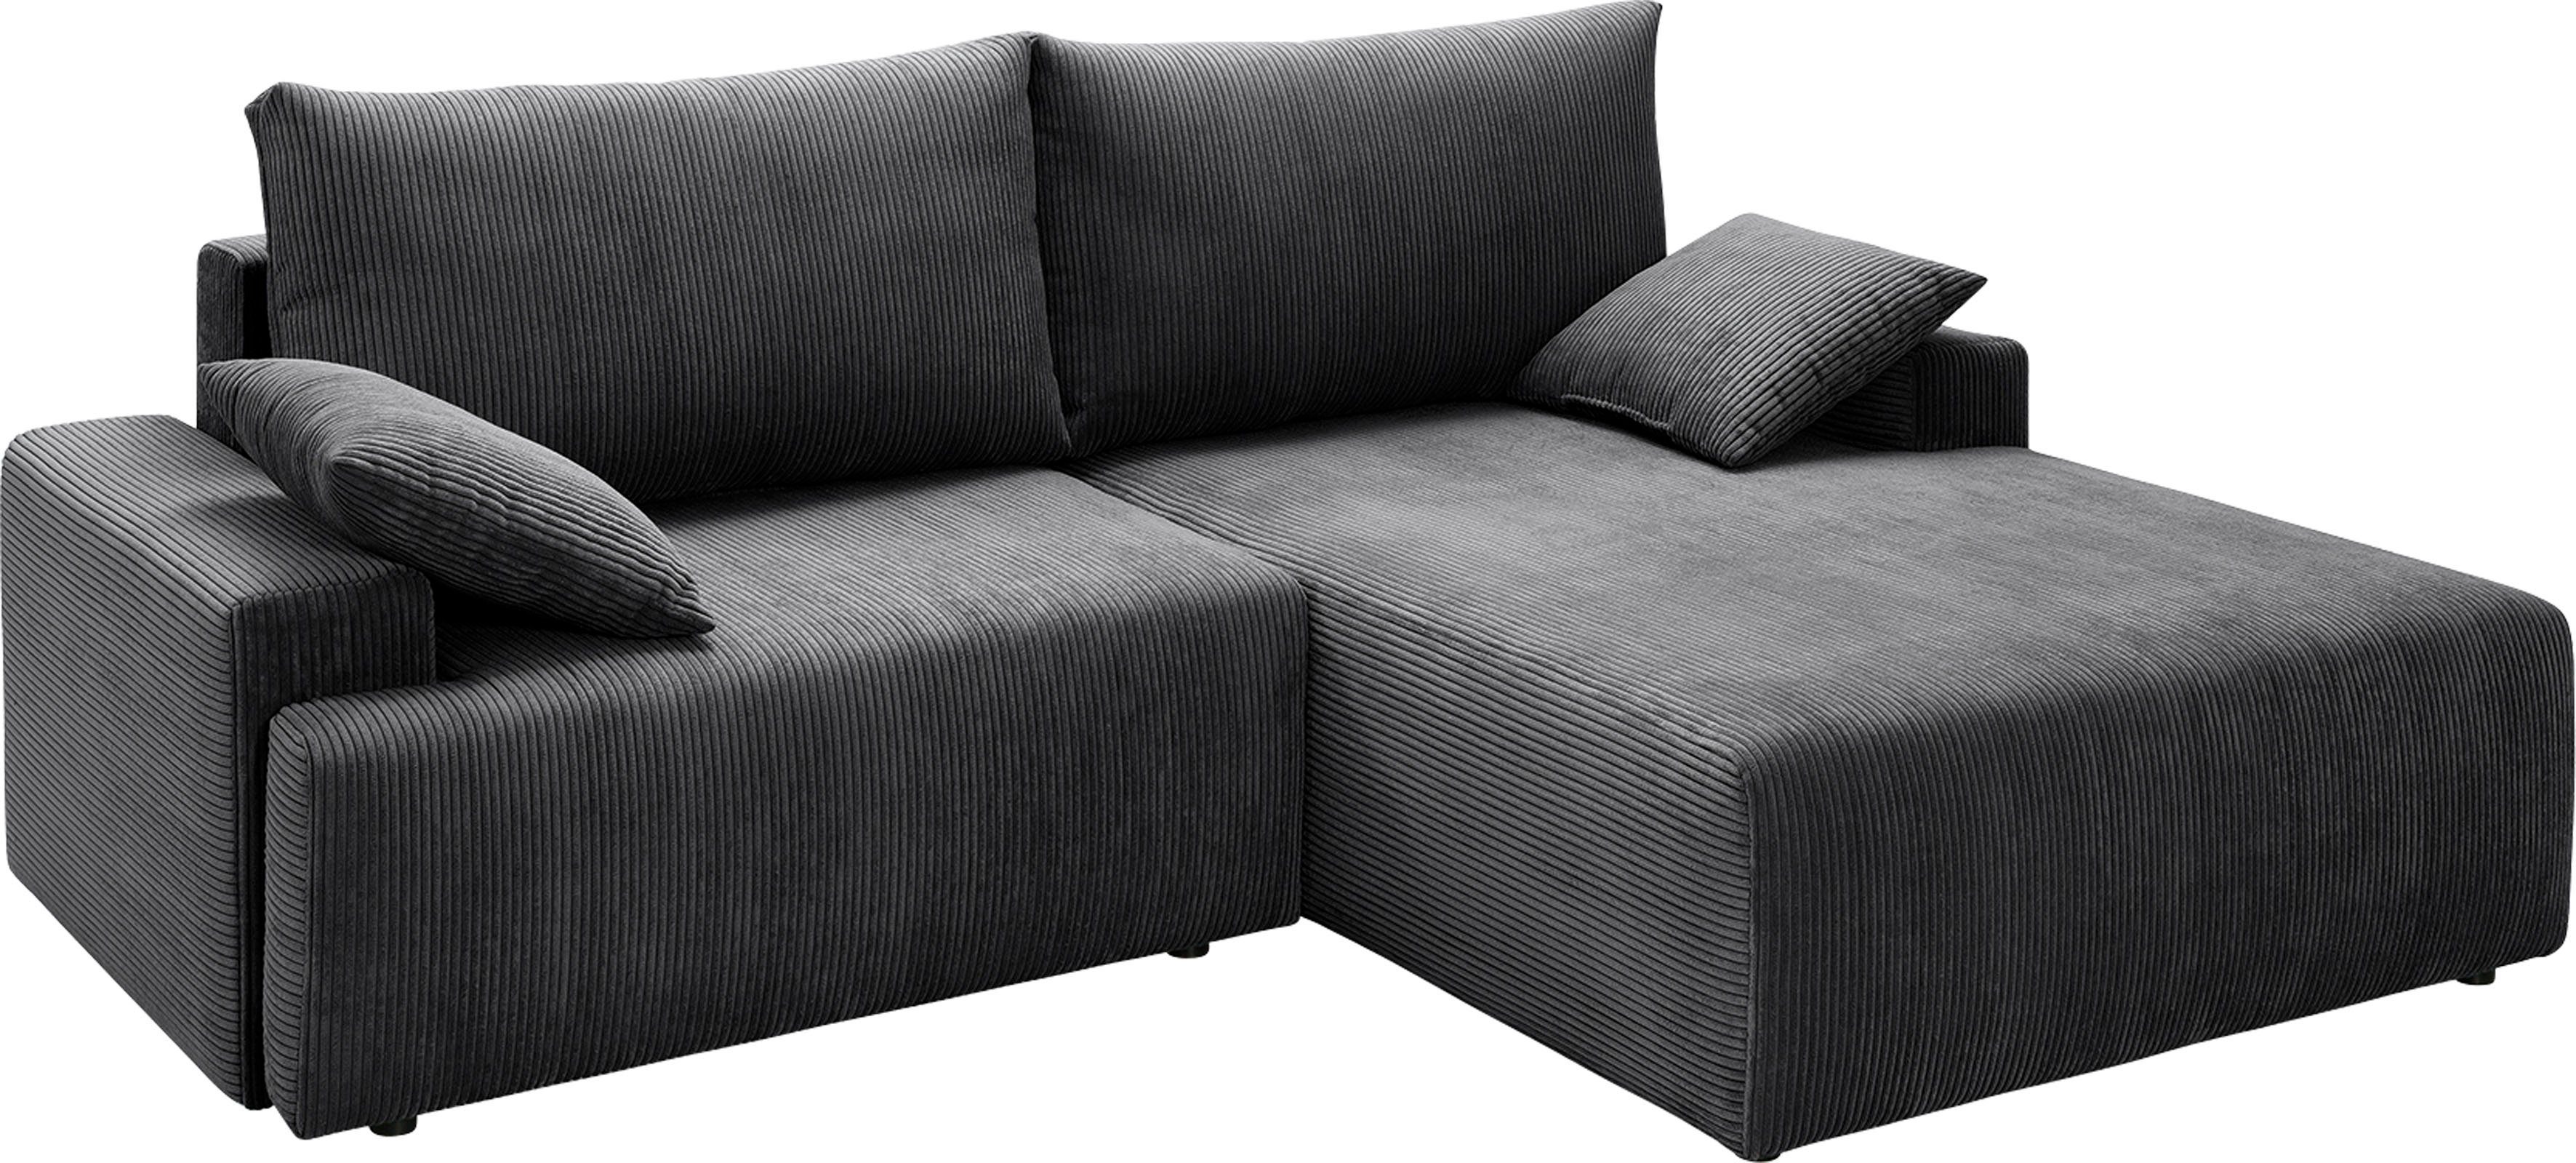 Bettfunktion Cord-Farben in verschiedenen sofa inklusive Ecksofa Orinoko, und Bettkasten - exxpo anthrazith fashion